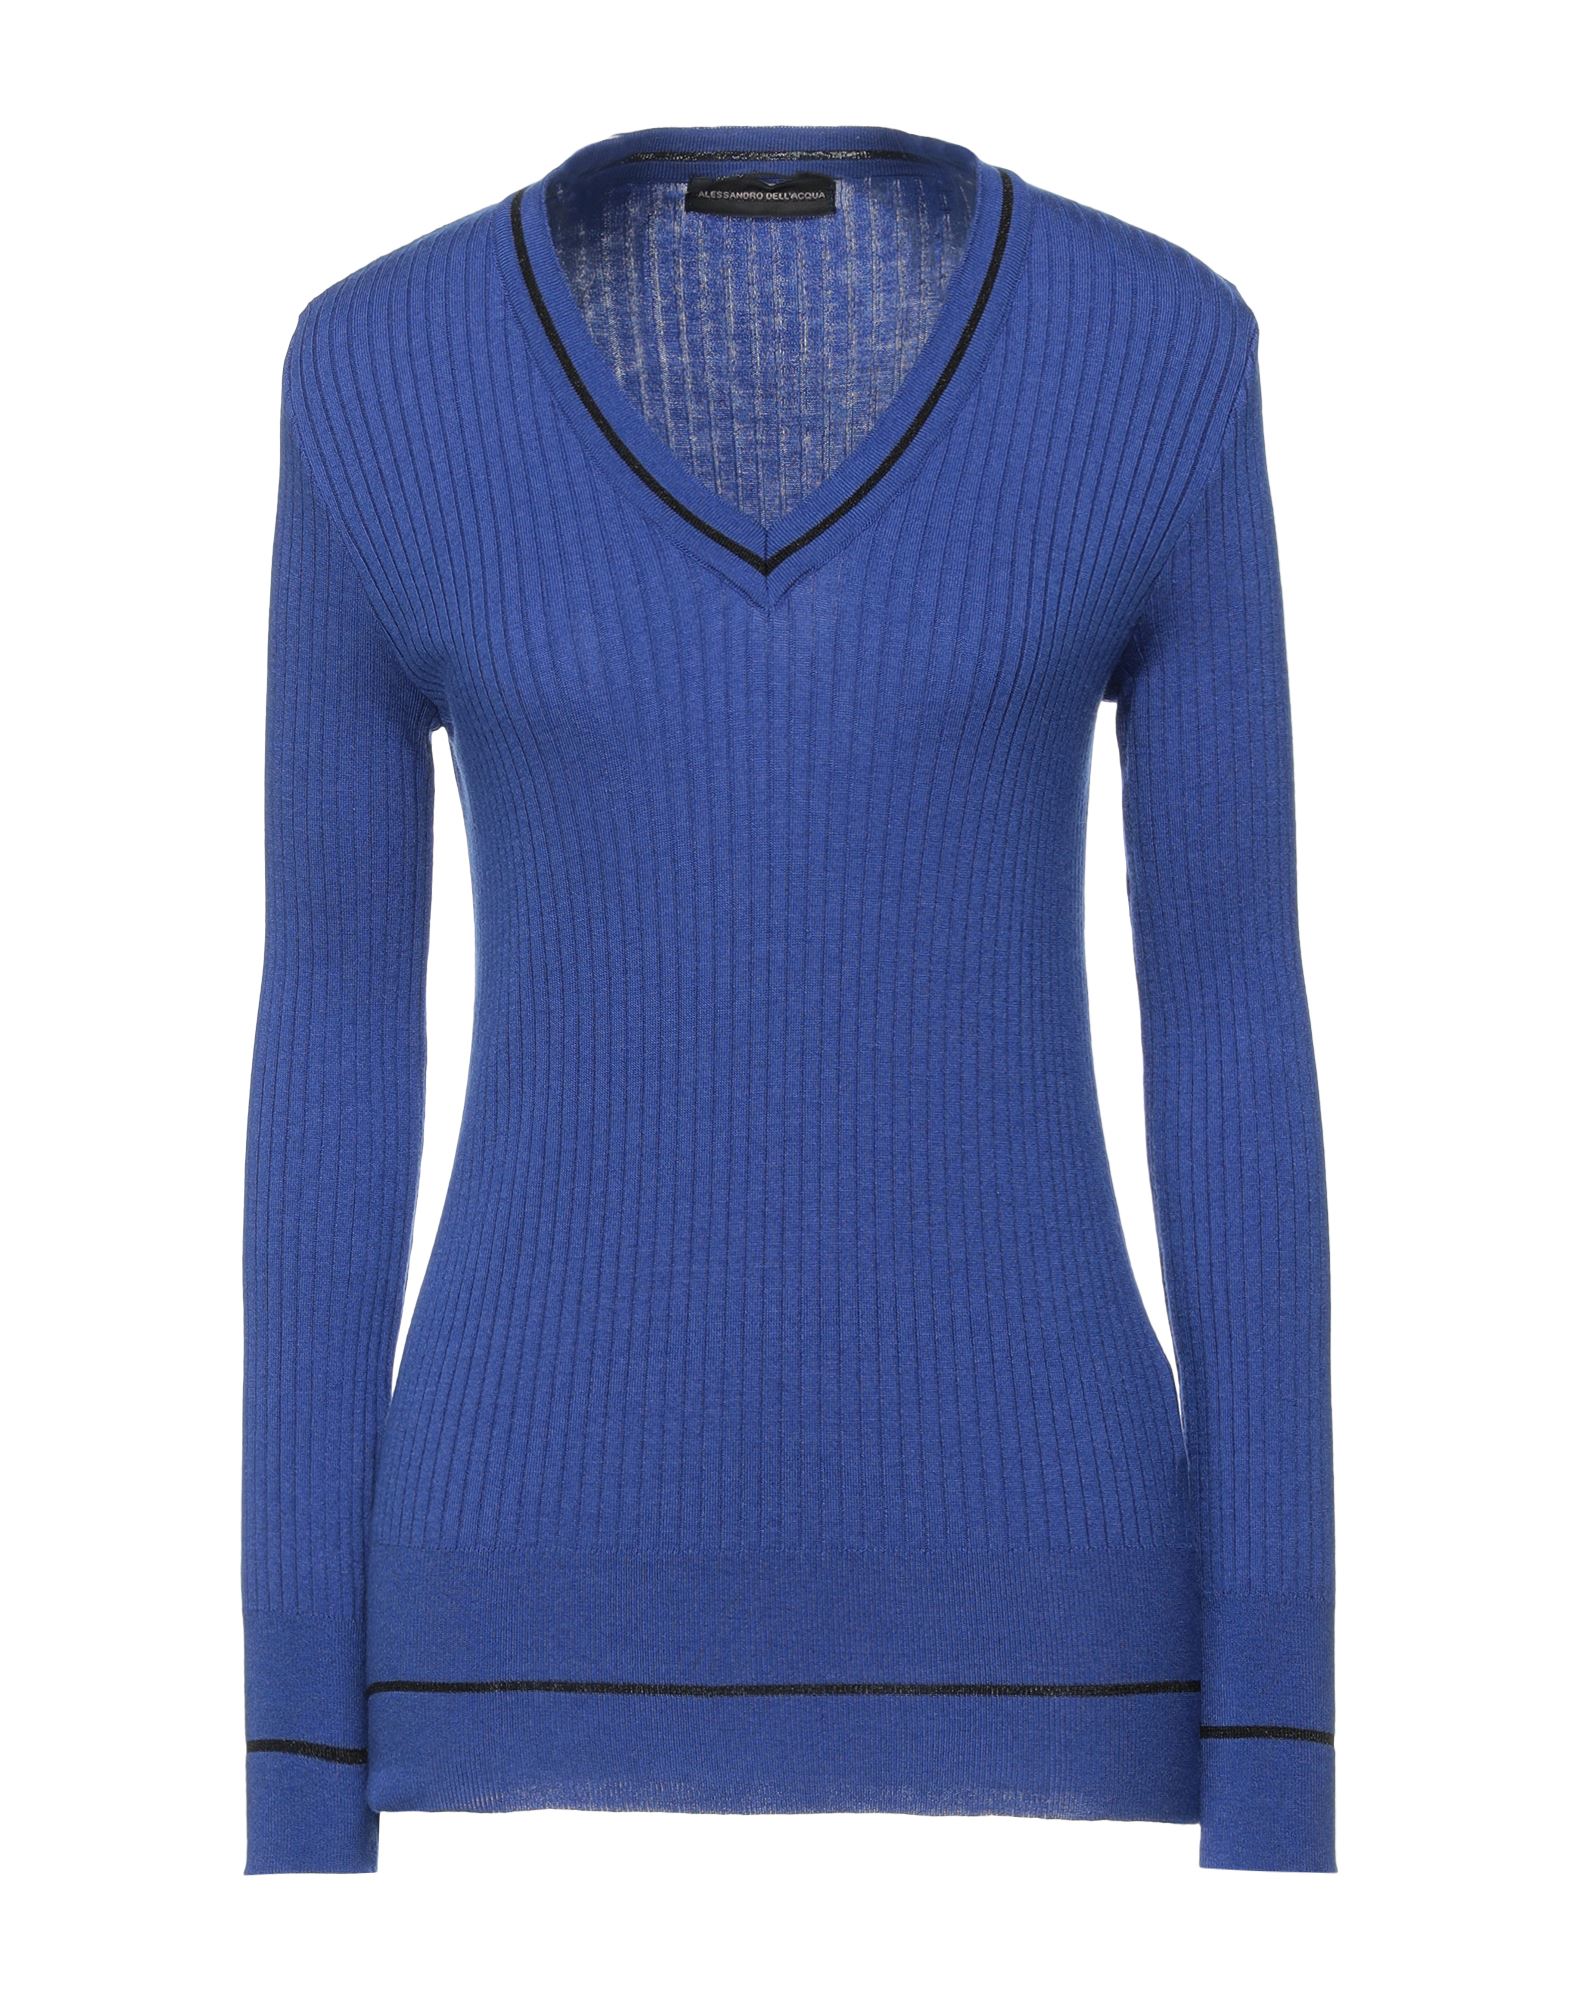 Alessandro Dell'acqua Sweaters In Bright Blue